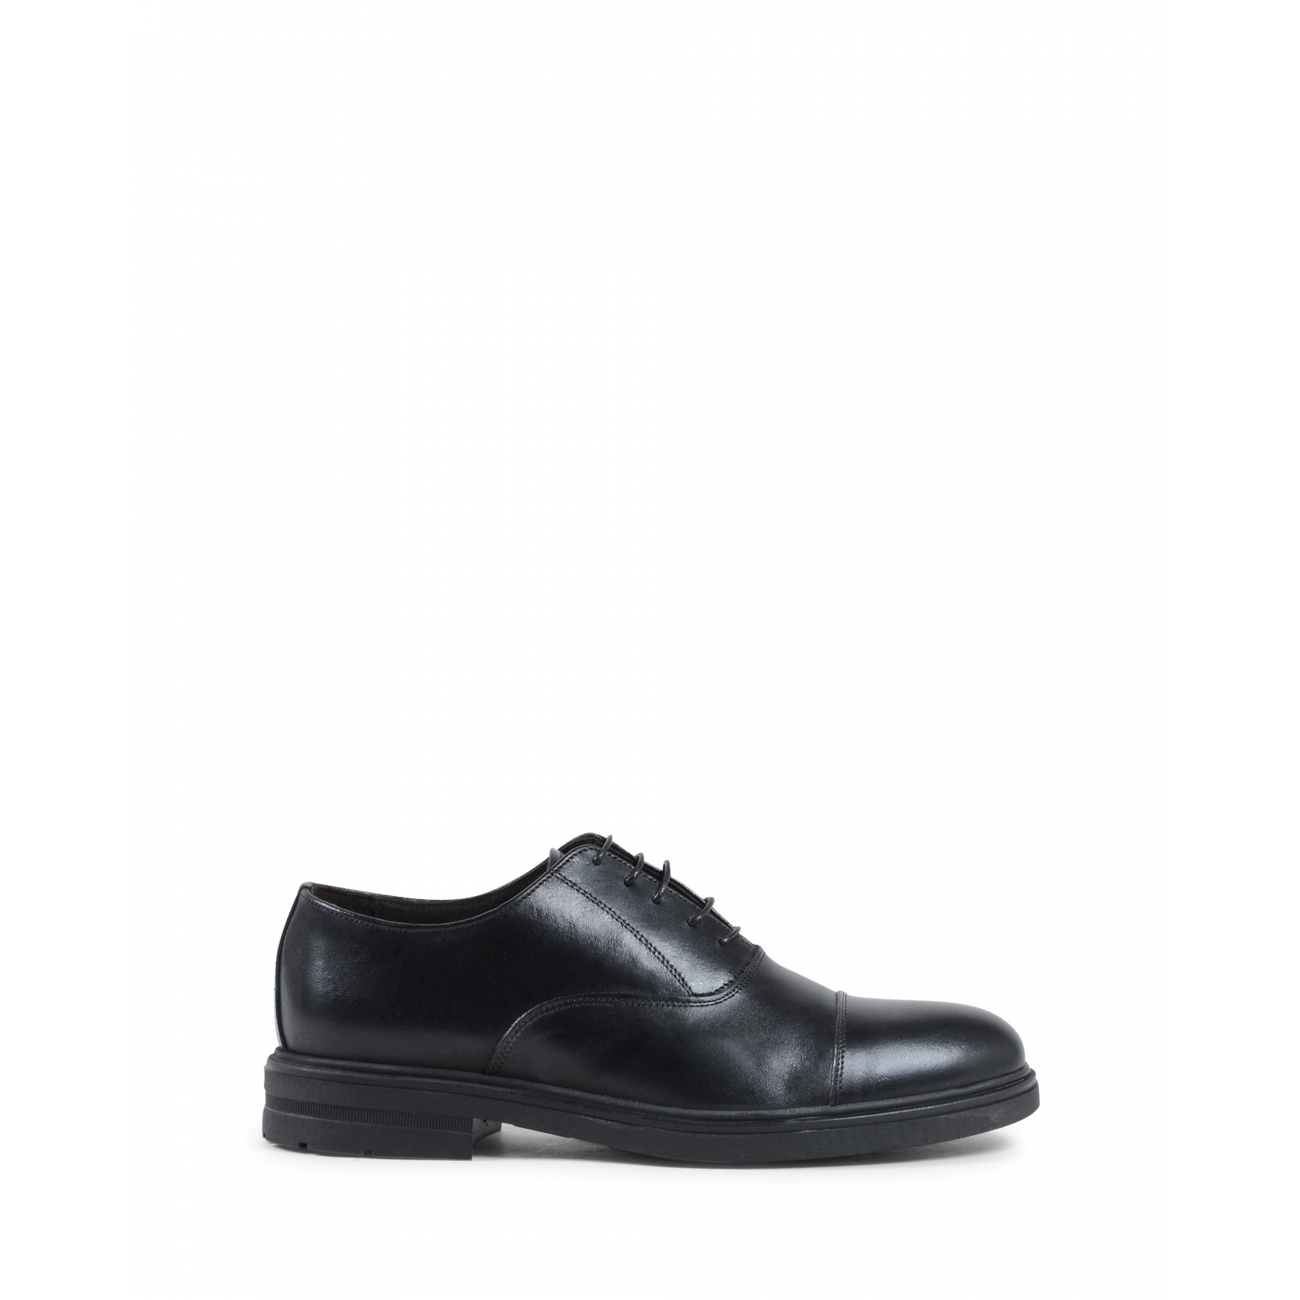 19V69 Italia Mens Classic Shoe Black 913L P VITELLO NERO